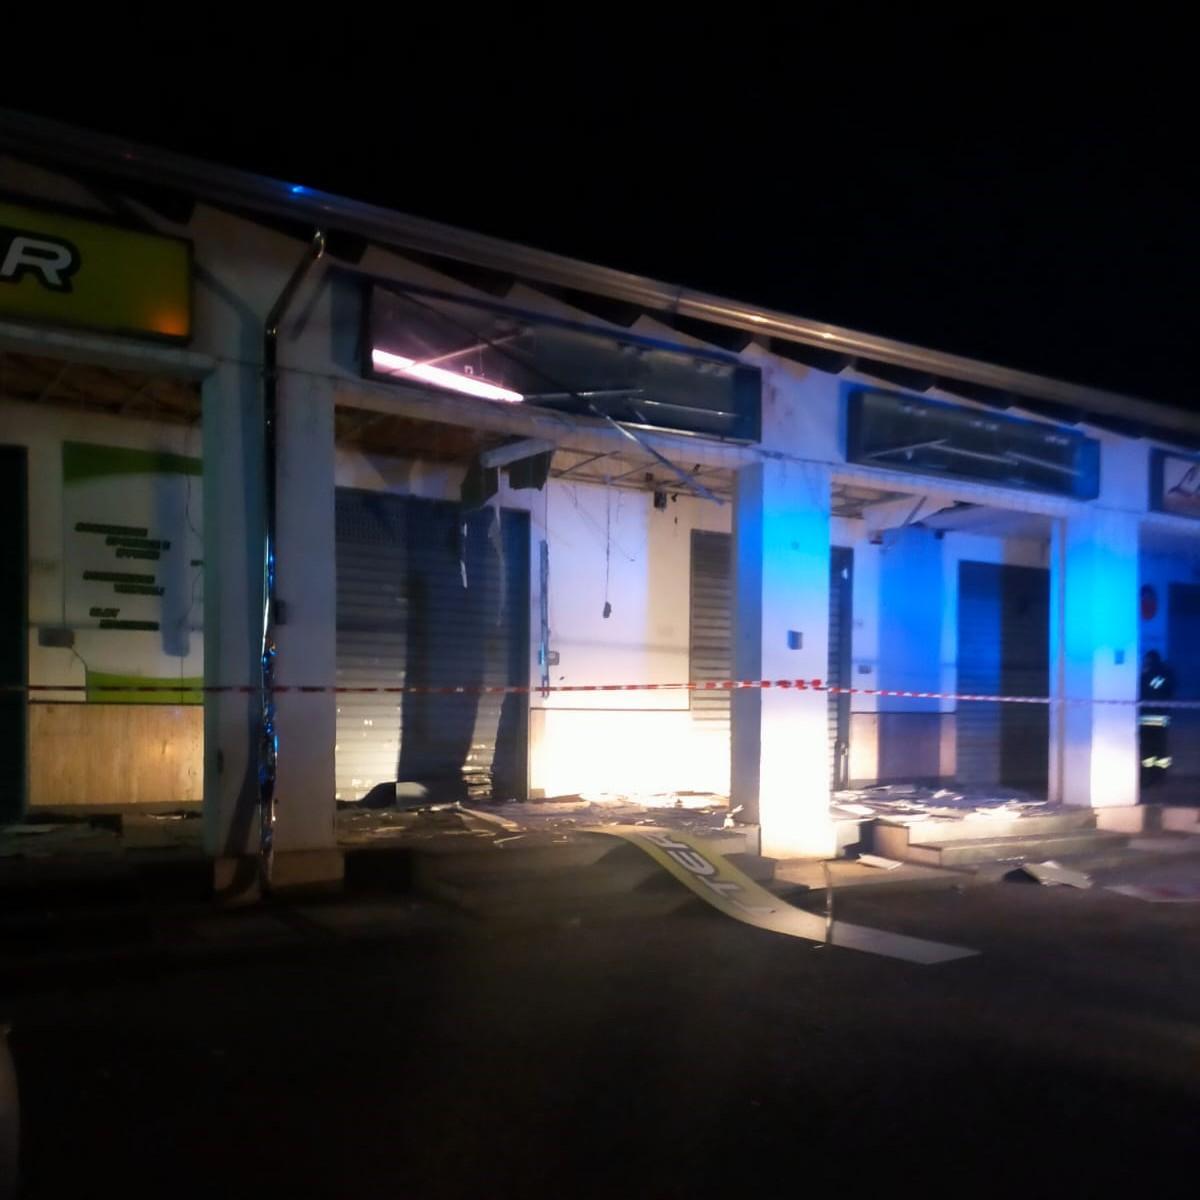 bomba carta esplode fuori centro scommesse danneggiati negozi vicini